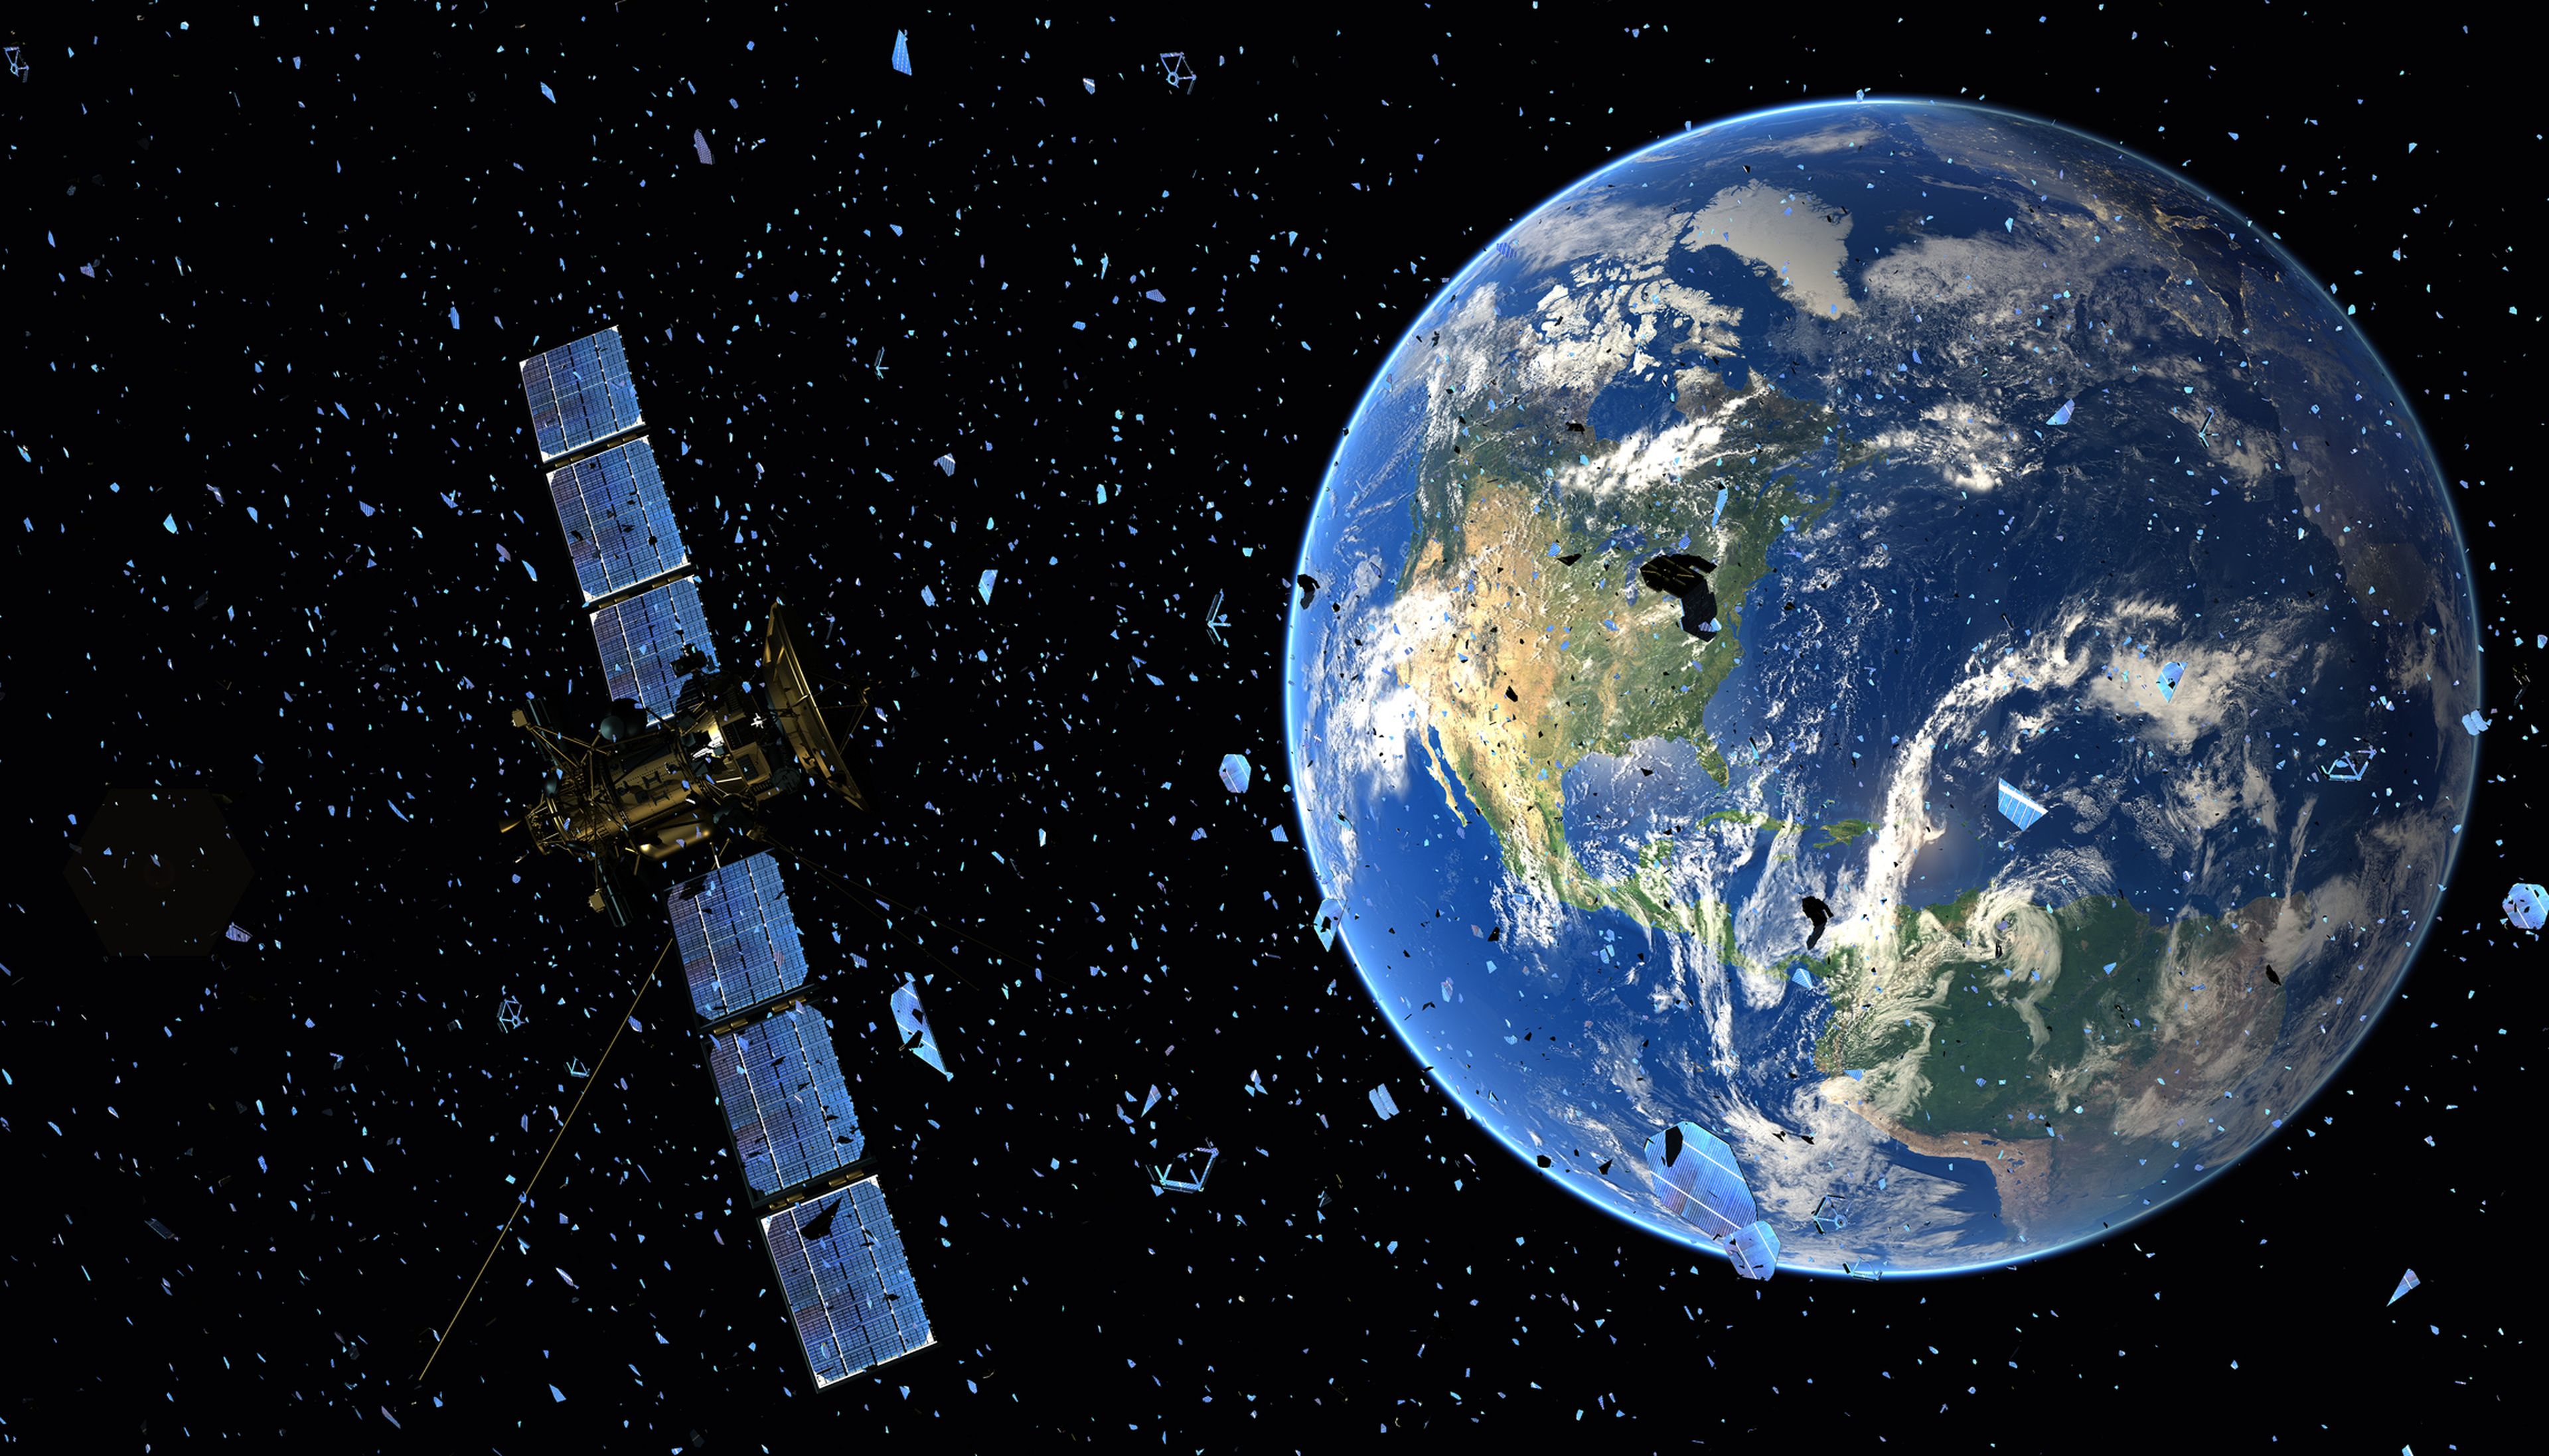 La basura espacial y las pruebas de armas antisatélite amenazan la órbita terrestre